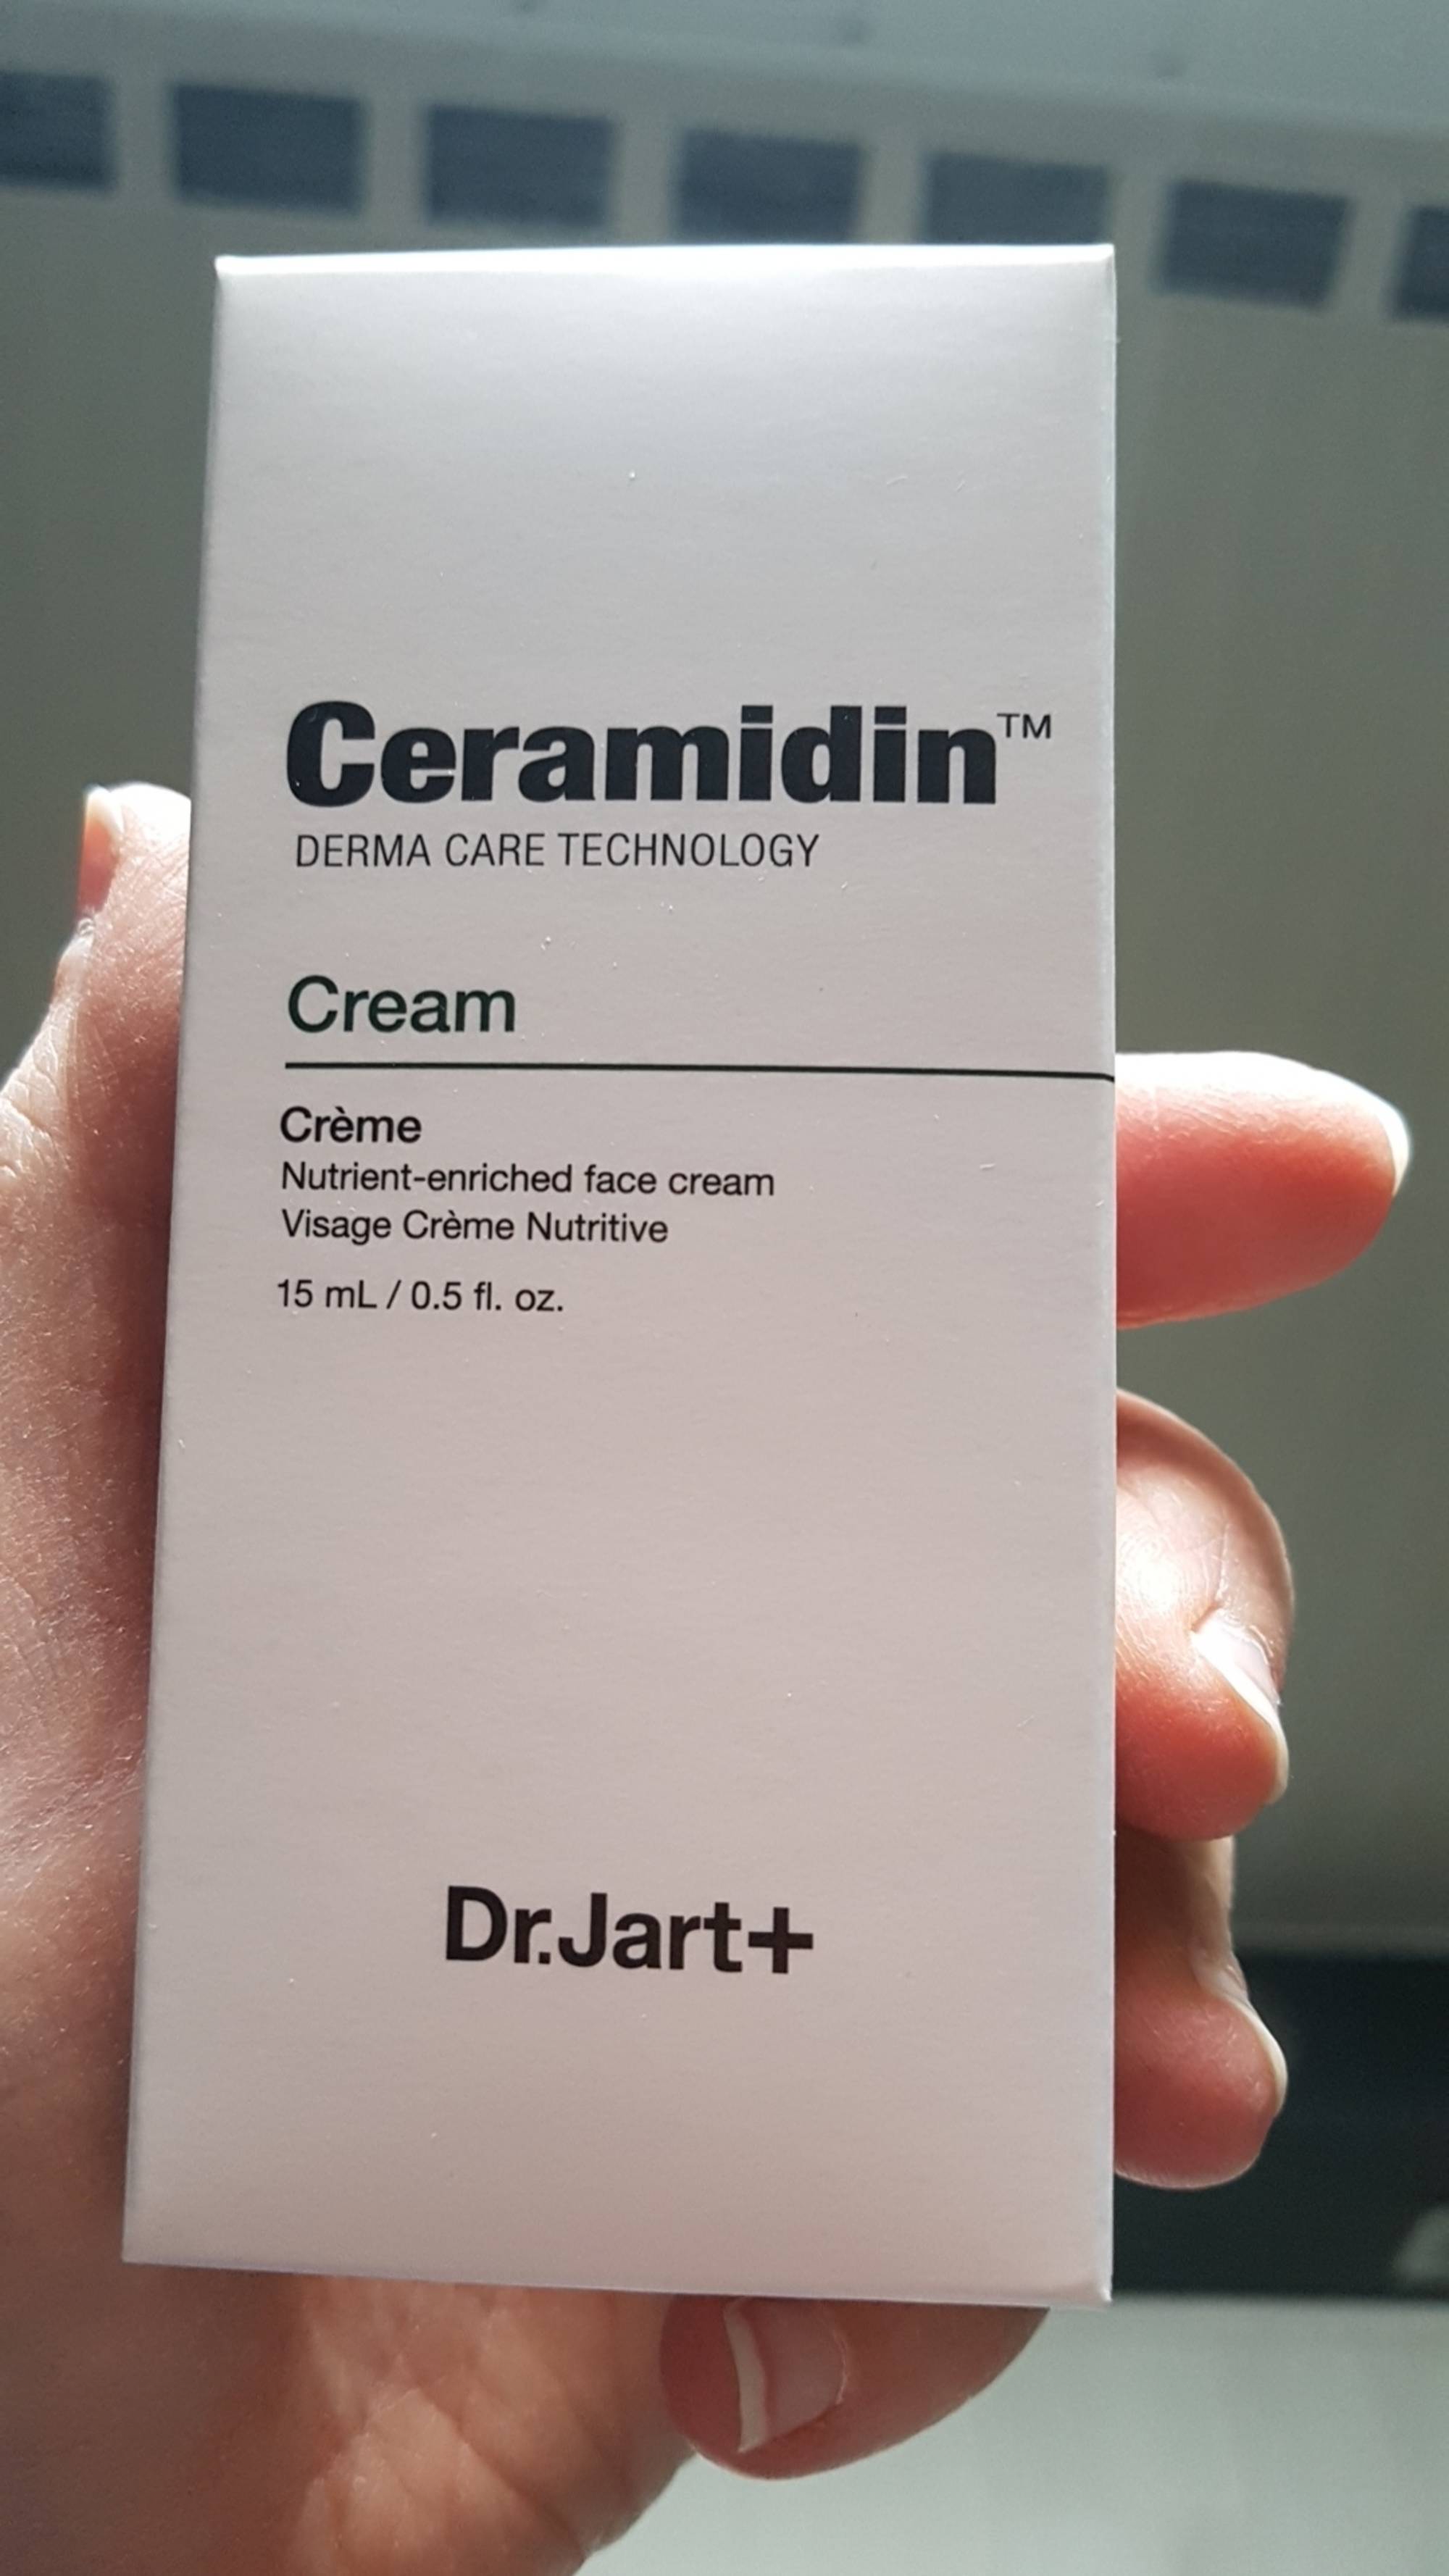 DR.JART+ - Ceramidin cream - Visage crème nutritive